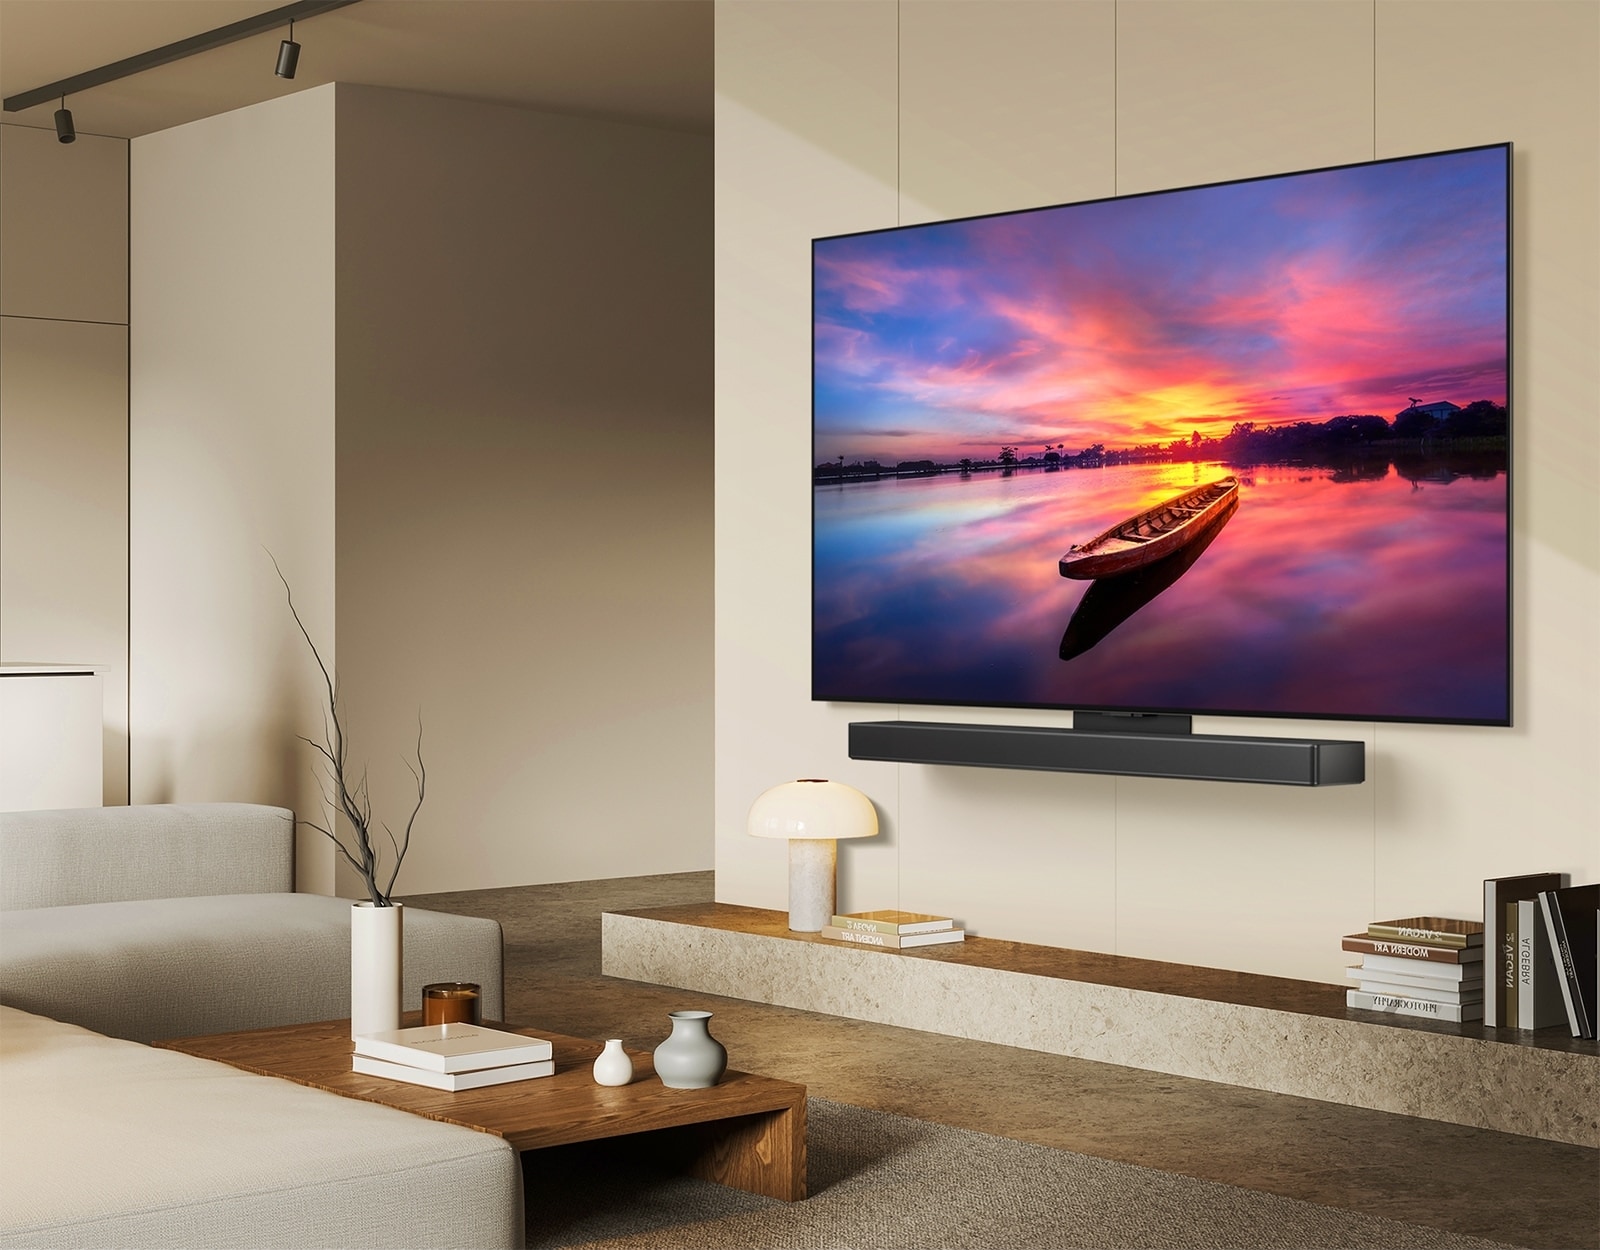 Телевизор LG OLED, OLED C4 ориентирован на 45 градусов влево, на снимке красивый закат с лодкой на озере. Телевизор крепится к саундбару LG с помощью кронштейна Synergy в минималистском жилом пространстве.